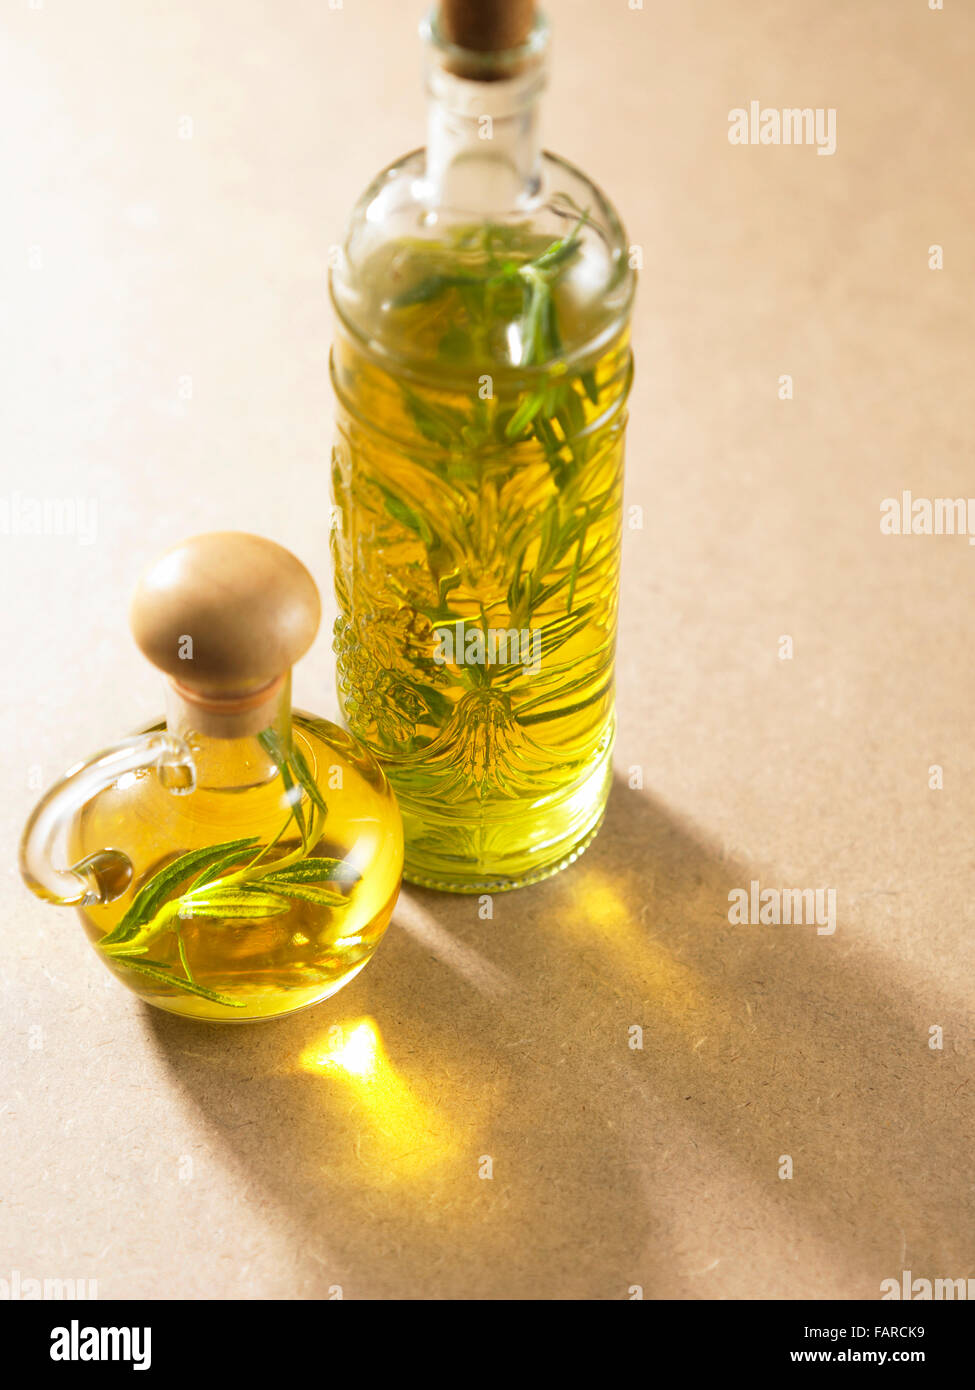 Stock Bild des Olivenöls Stockfoto